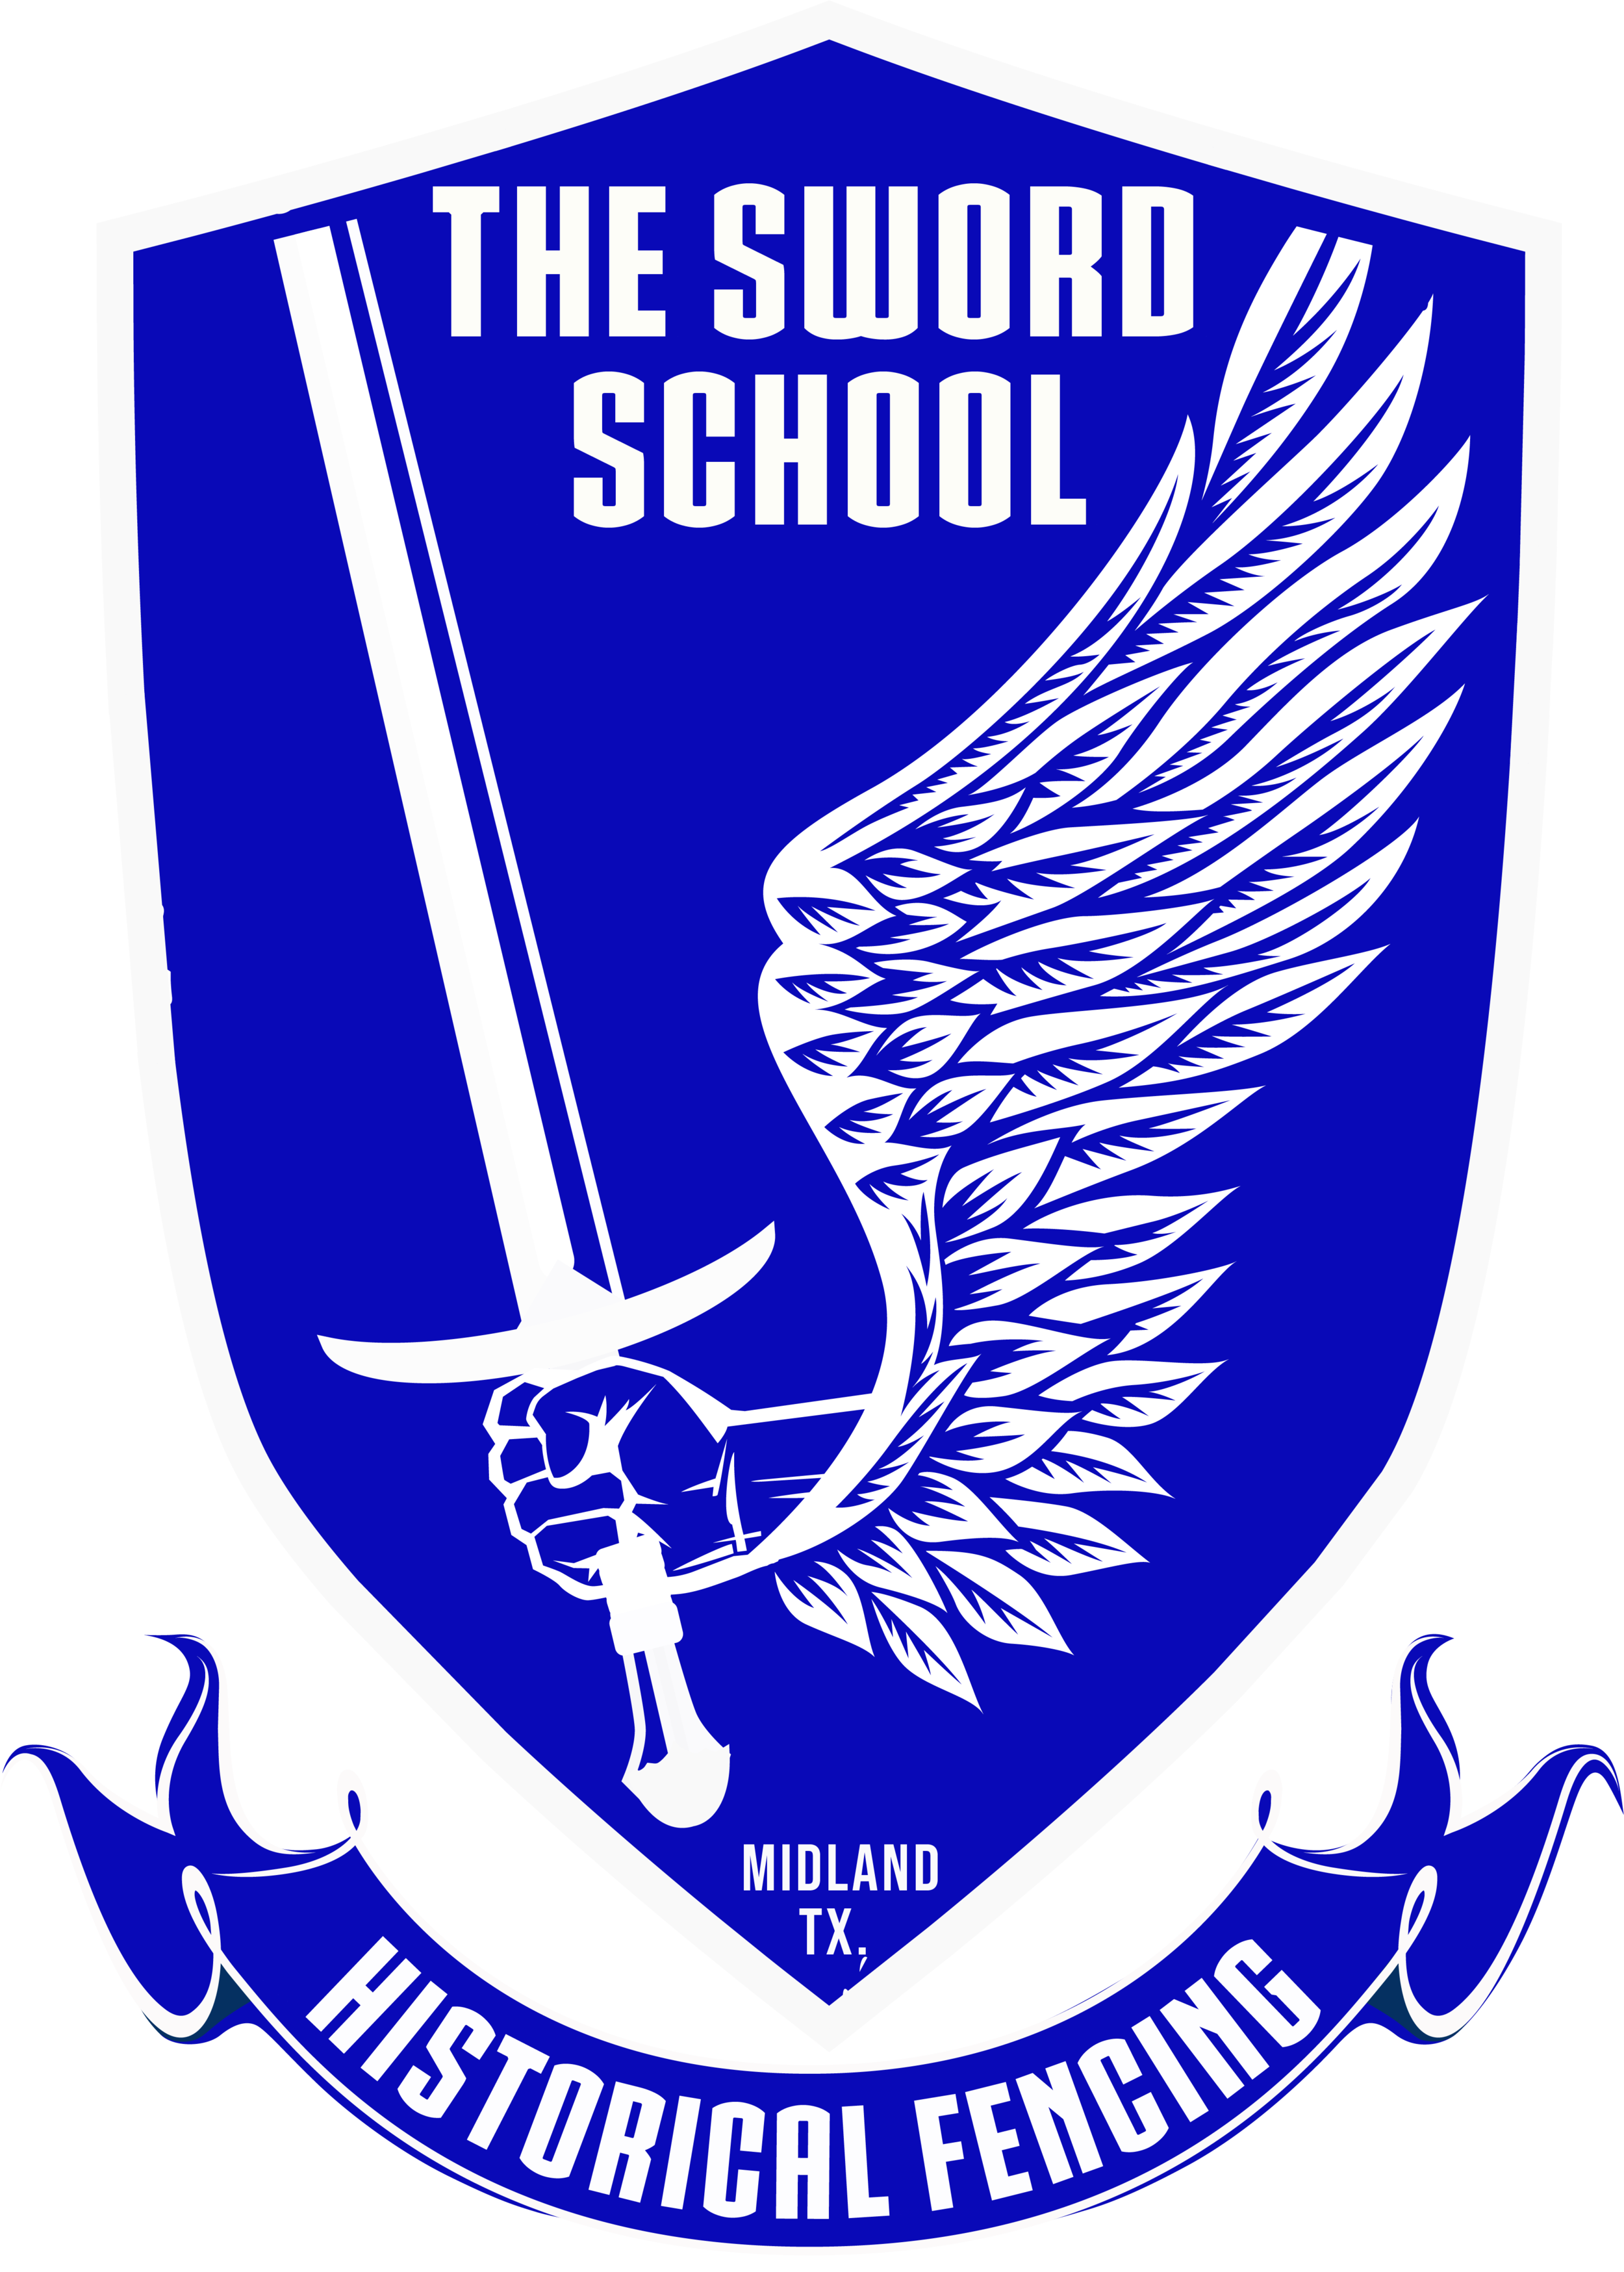 The Sword School